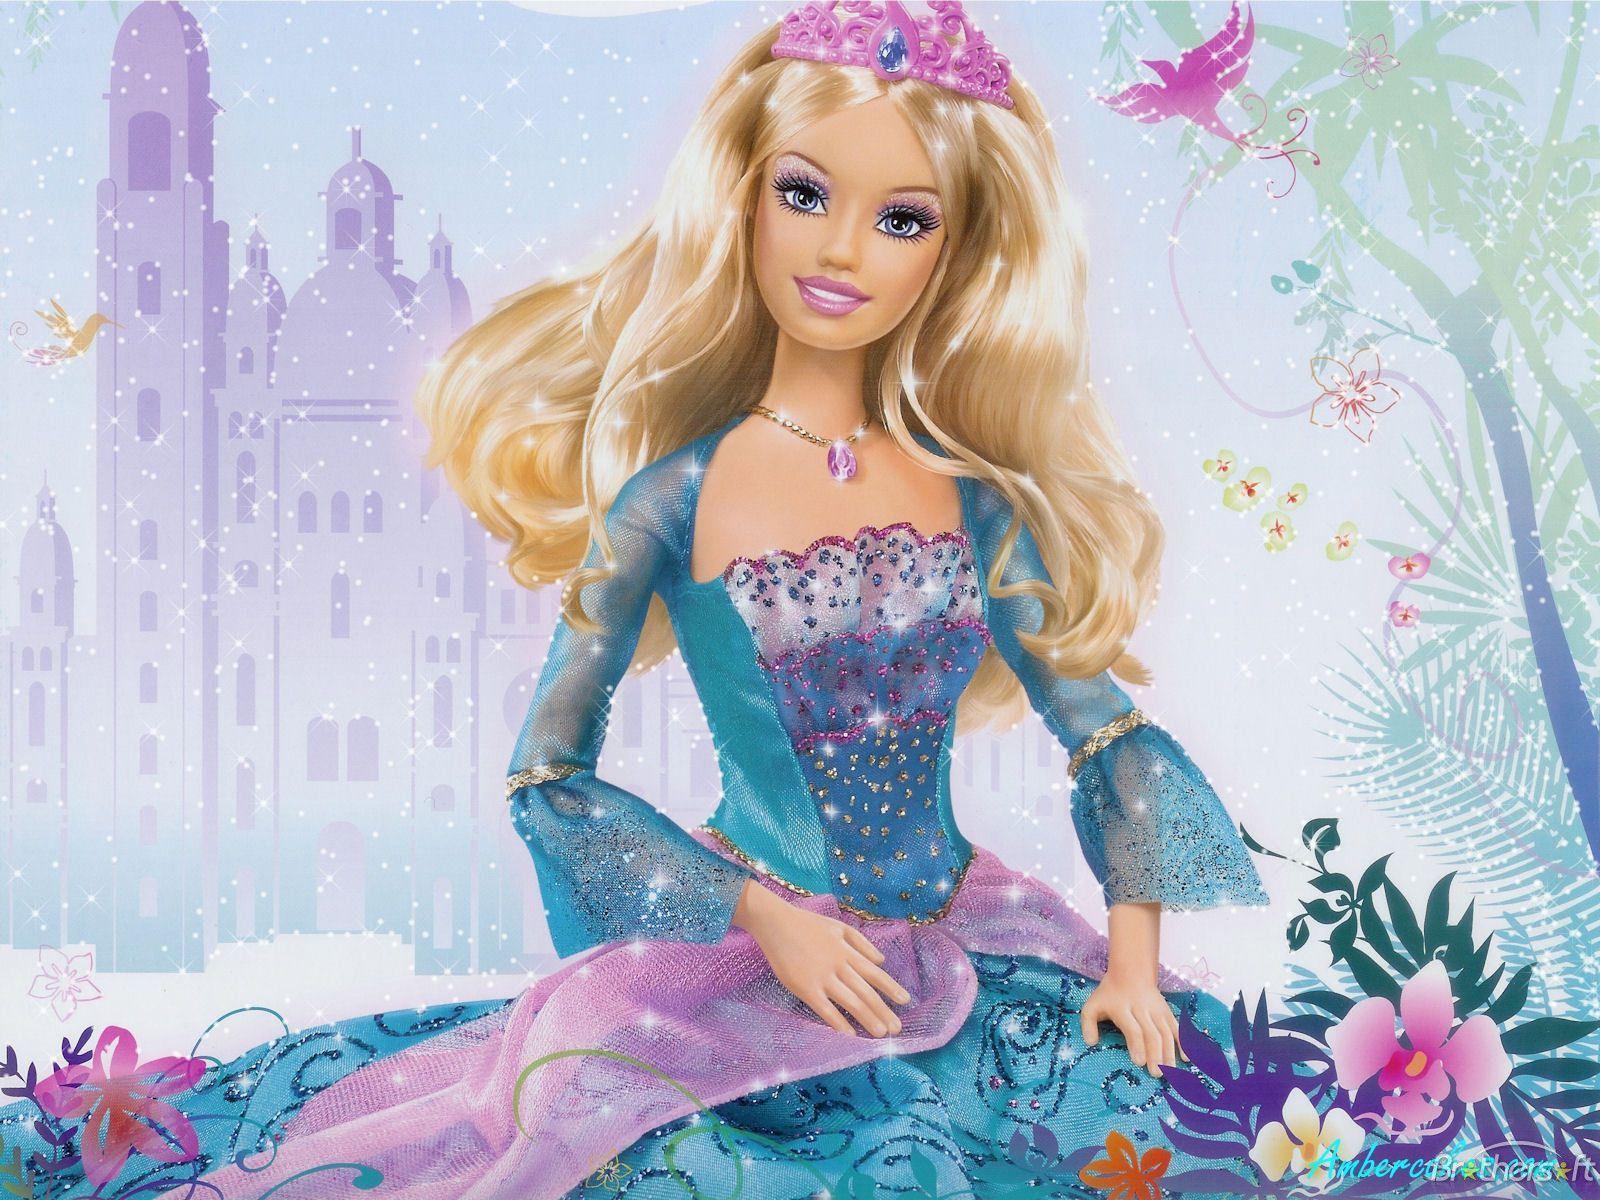 Wallpaper Dasktop Gambar Barbie 3d Image Num 13